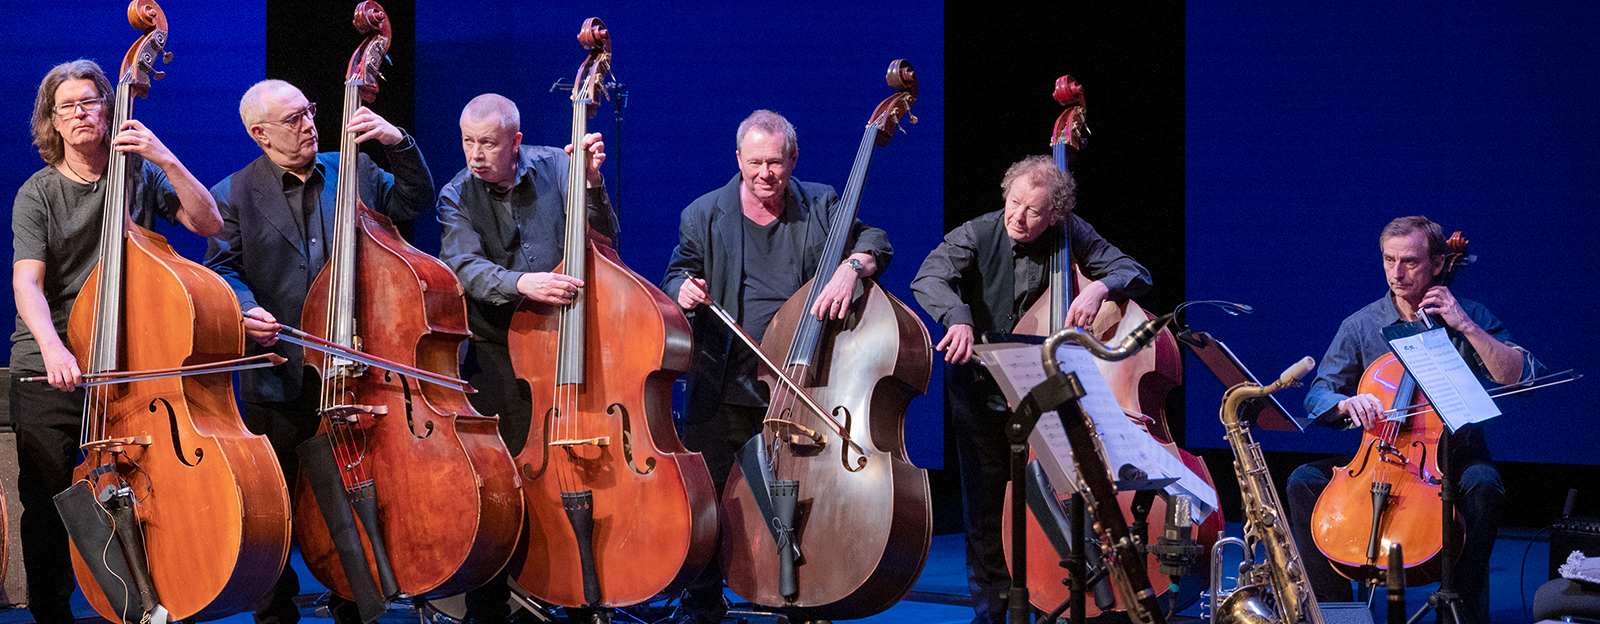 Alla basarna på rad, och en cello (ej föreställningsbild). Tomas von Brömssen, Michael Krönlein, Anders Blad, Stefan Sandberg, Per Melin, Bernt Andersson och Daniel Ekborg.